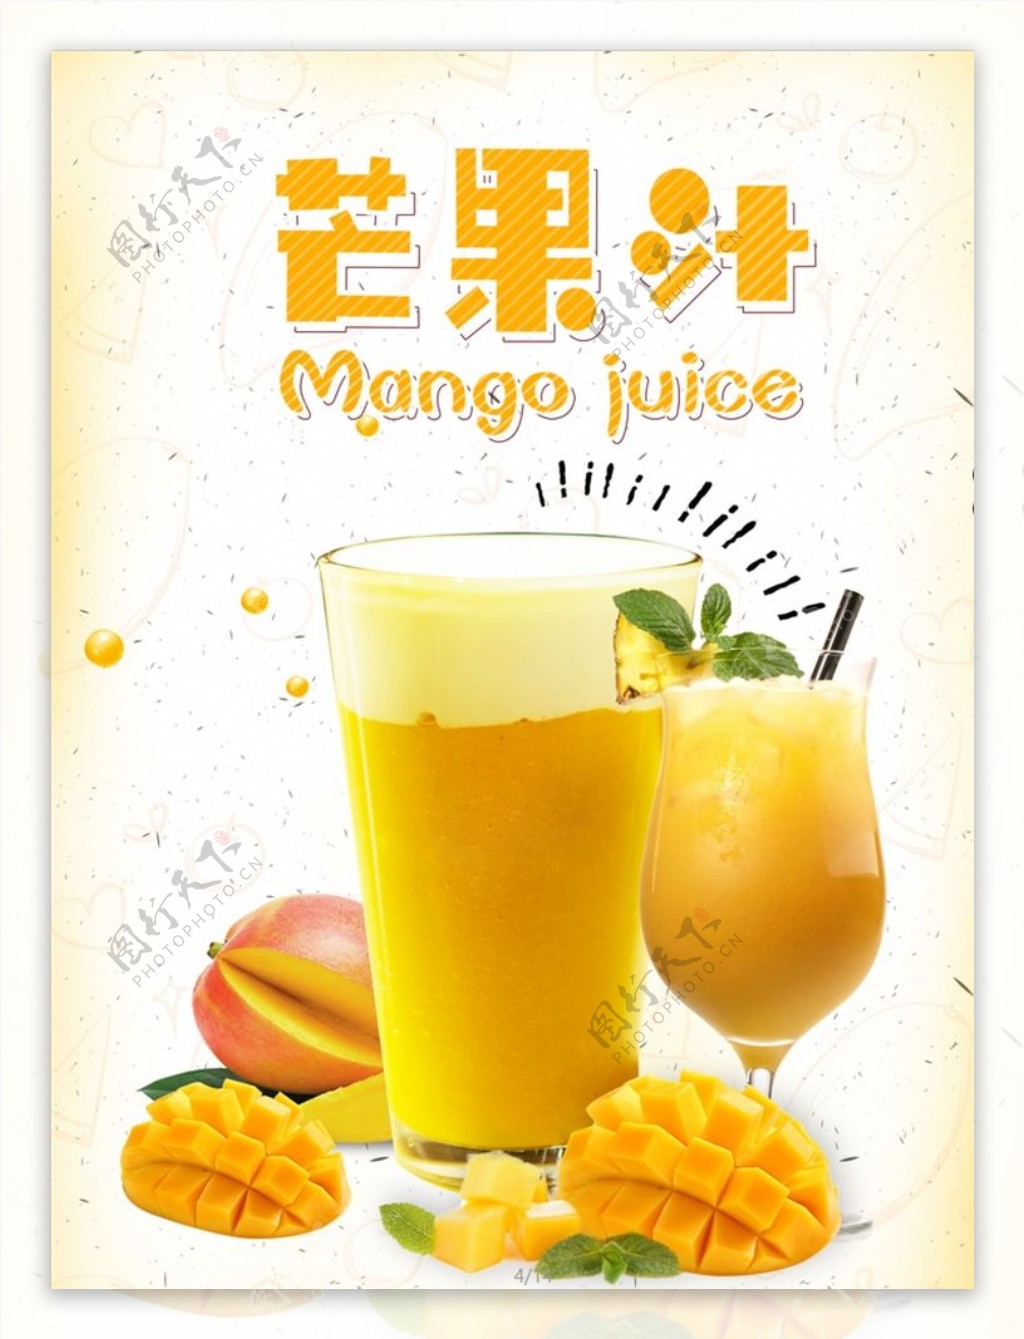 芒果汁海报鲜芒果汁鲜榨芒果图片